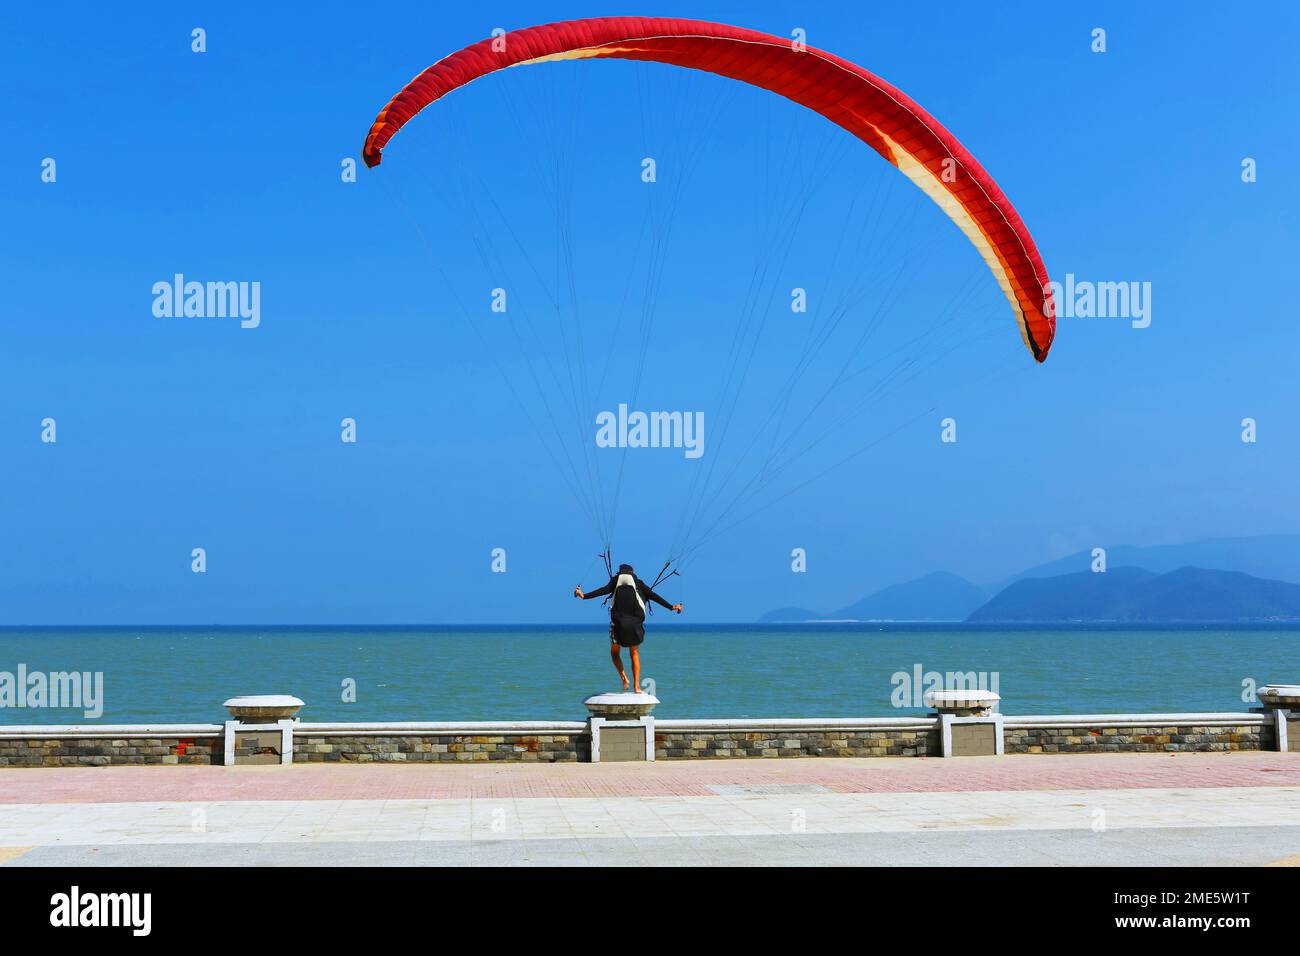 un homme se tient sur un parapet et tente de voler avec un parachute Banque D'Images